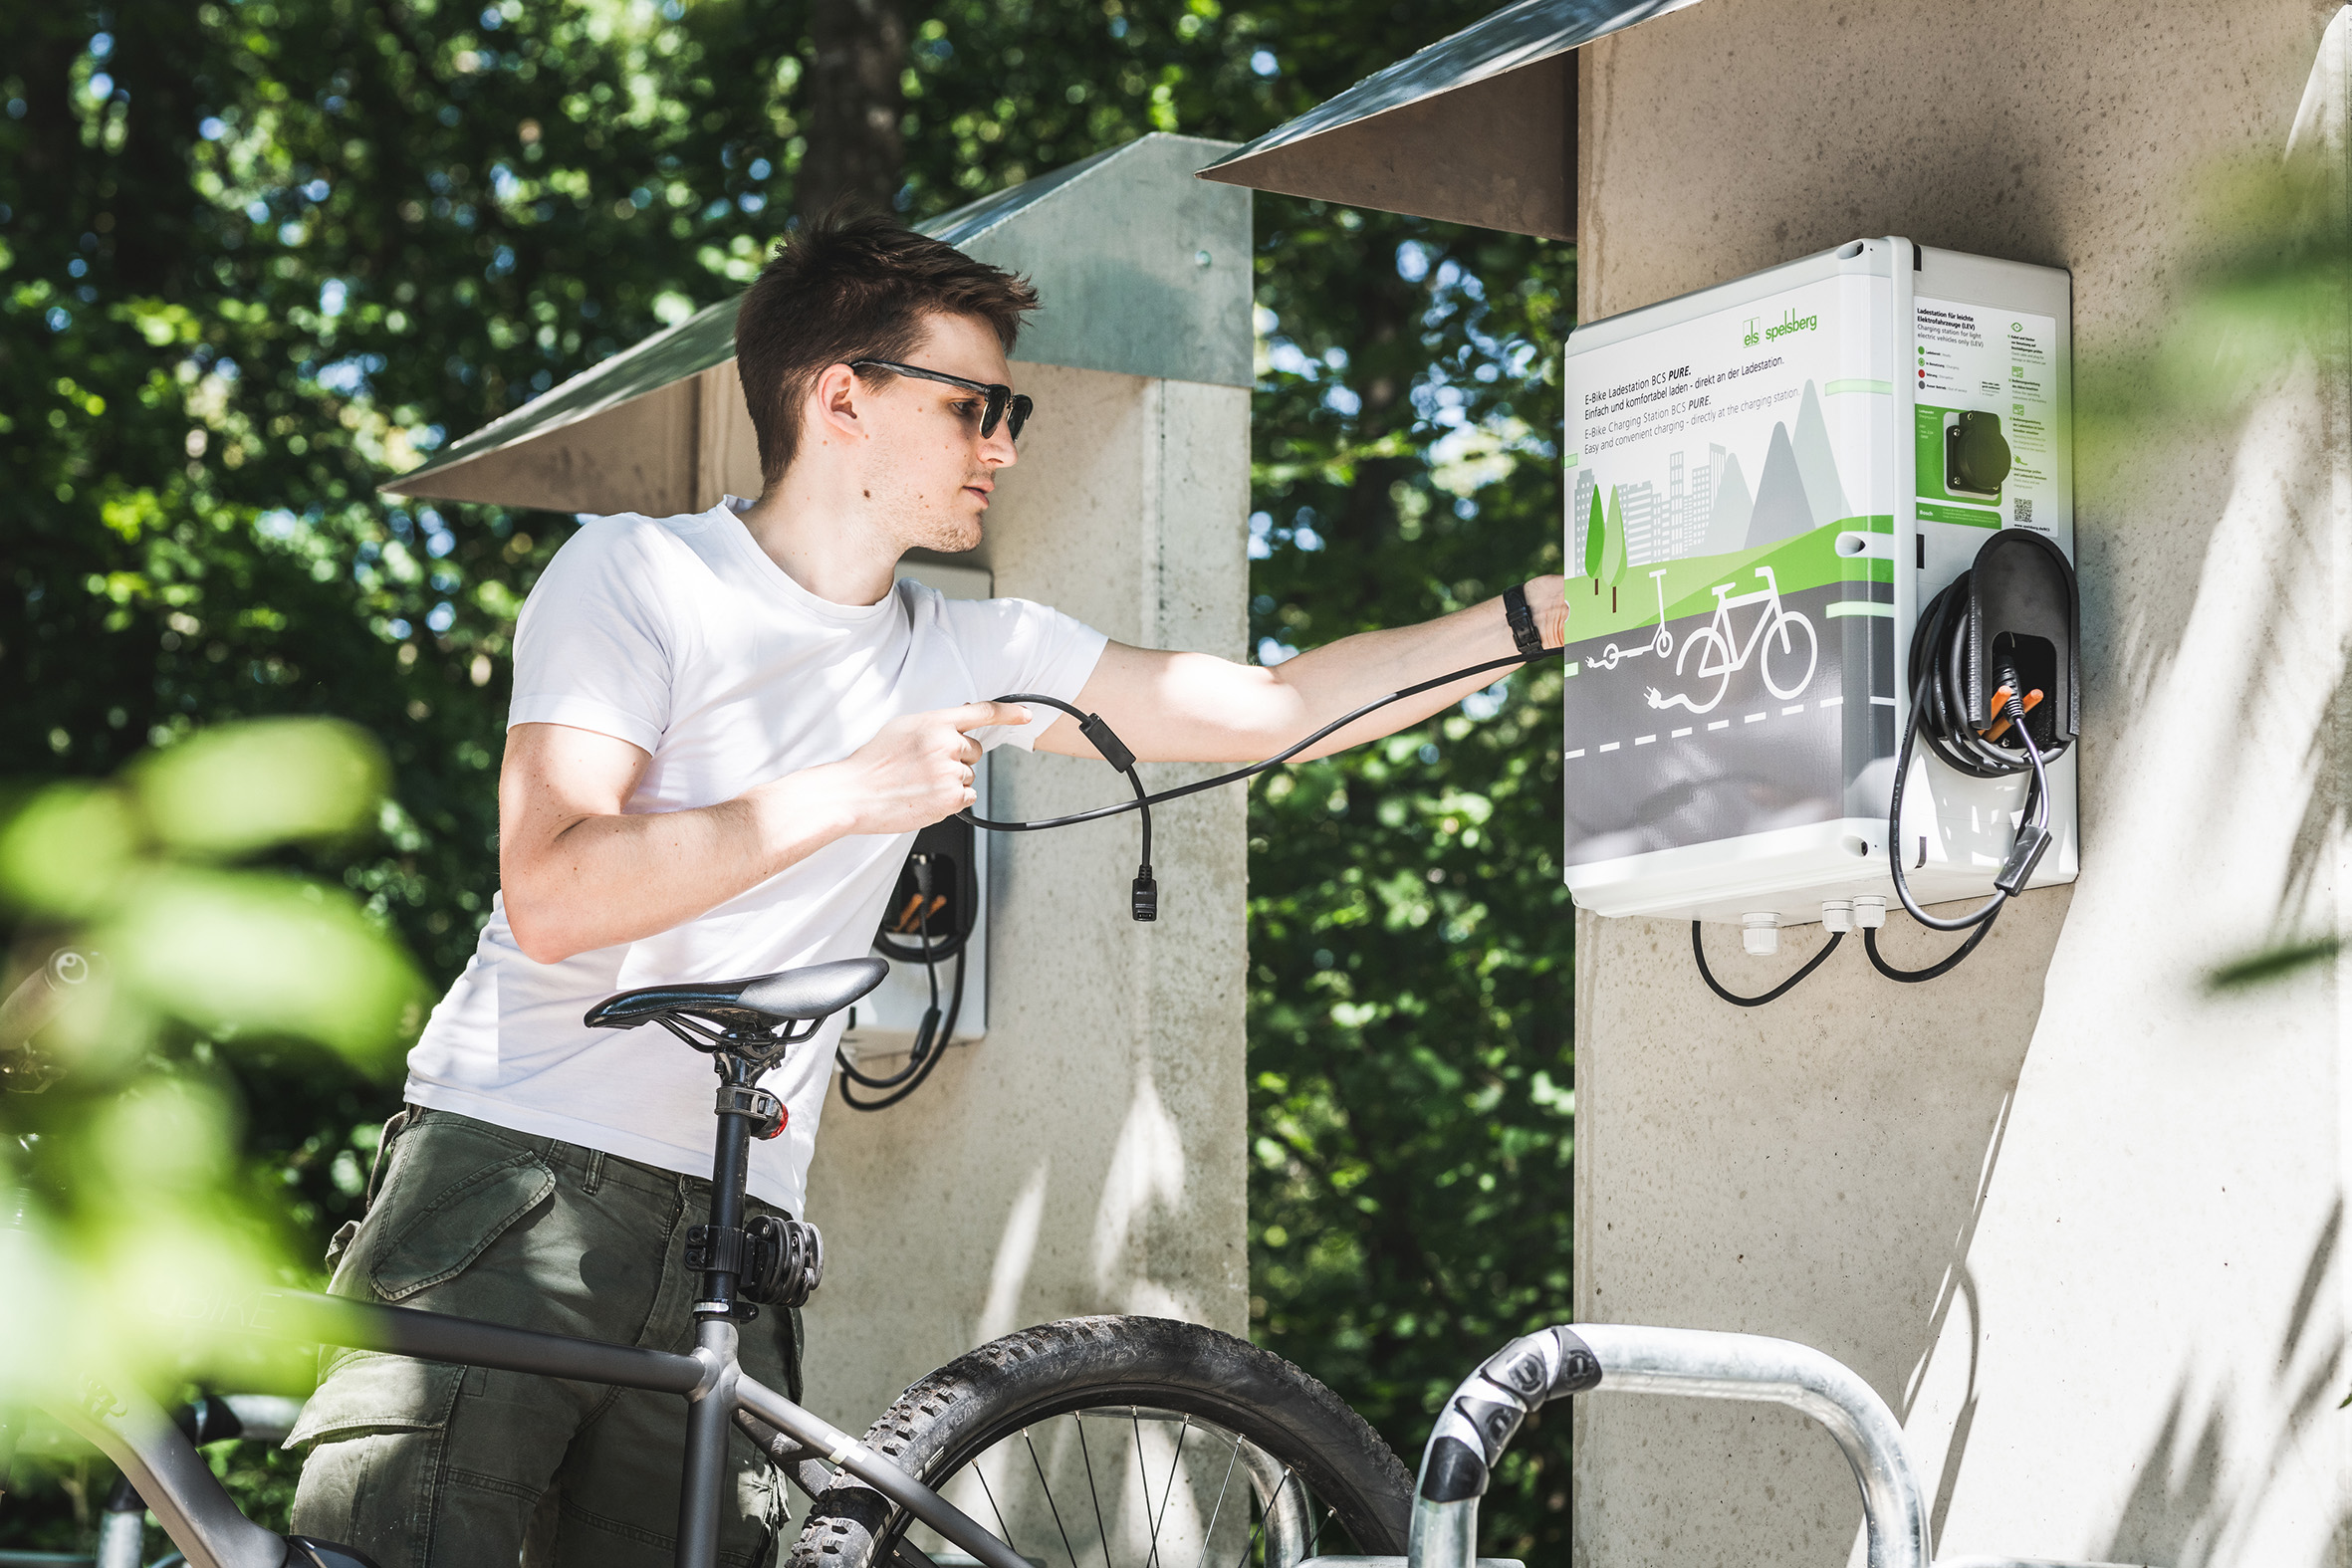 Spelsberg’s Bike Charging Station (BCS).